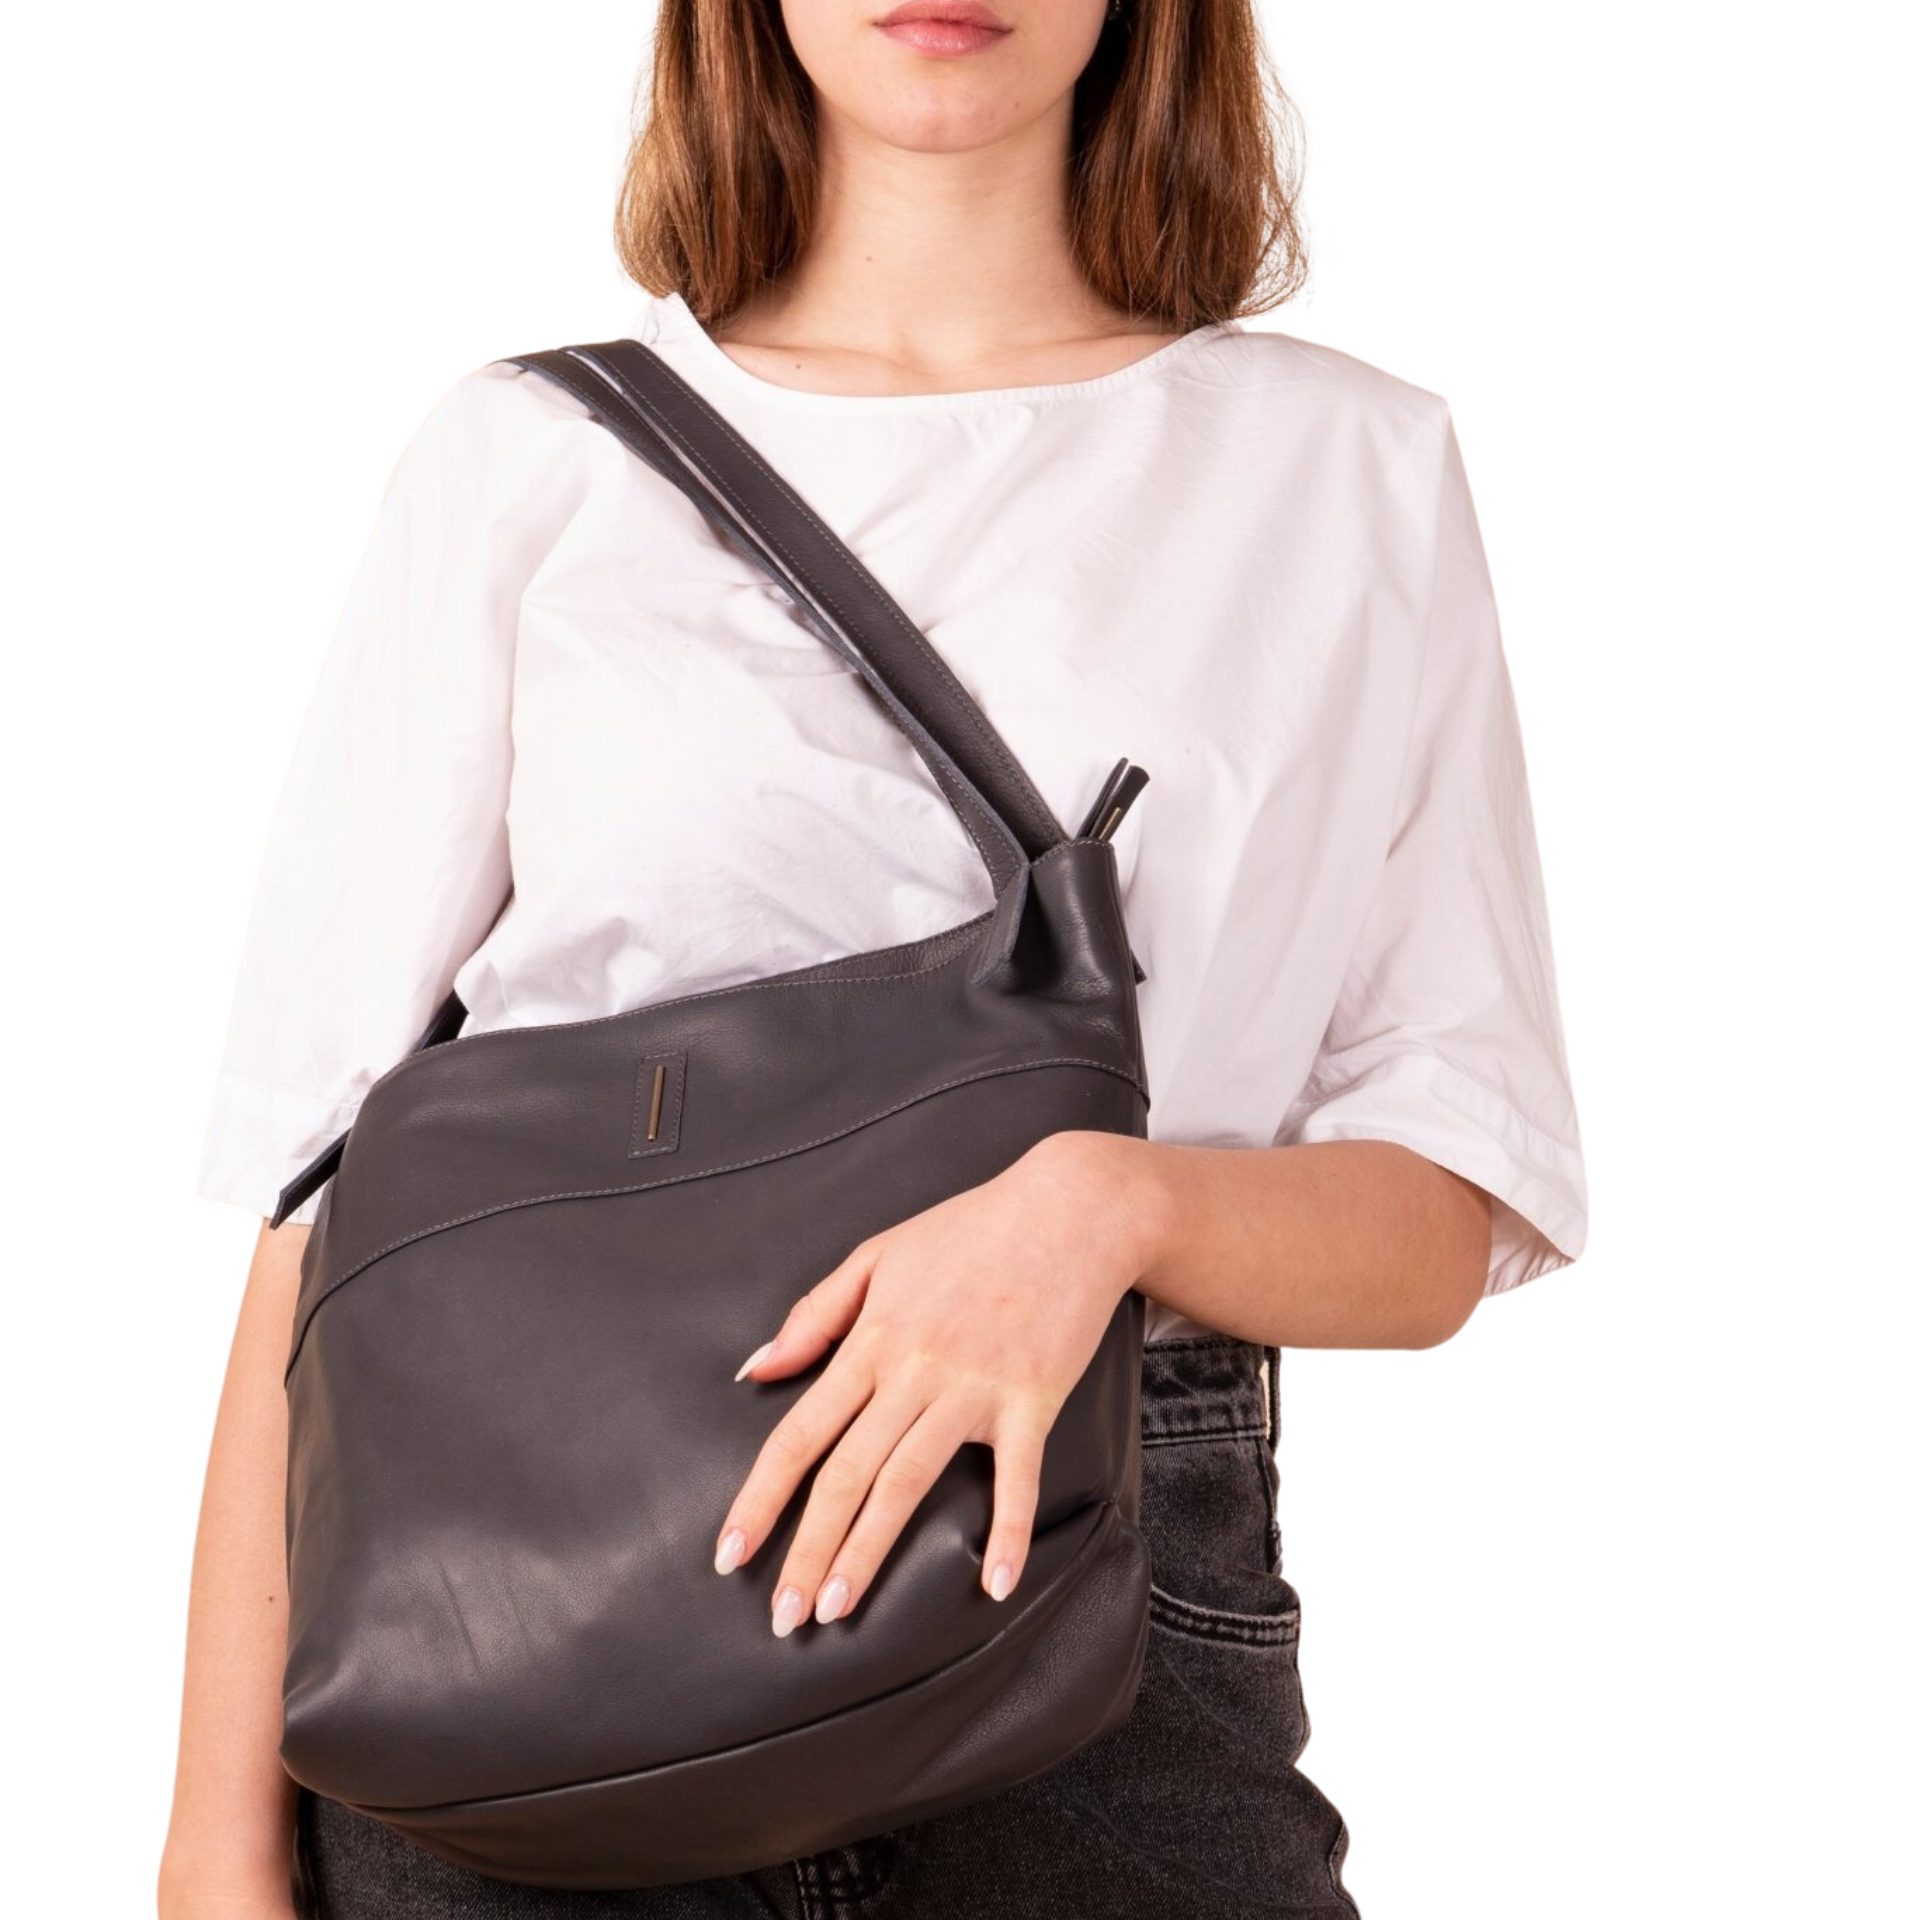 Julie mousse dark gray - large shoulder bag in gray leather 